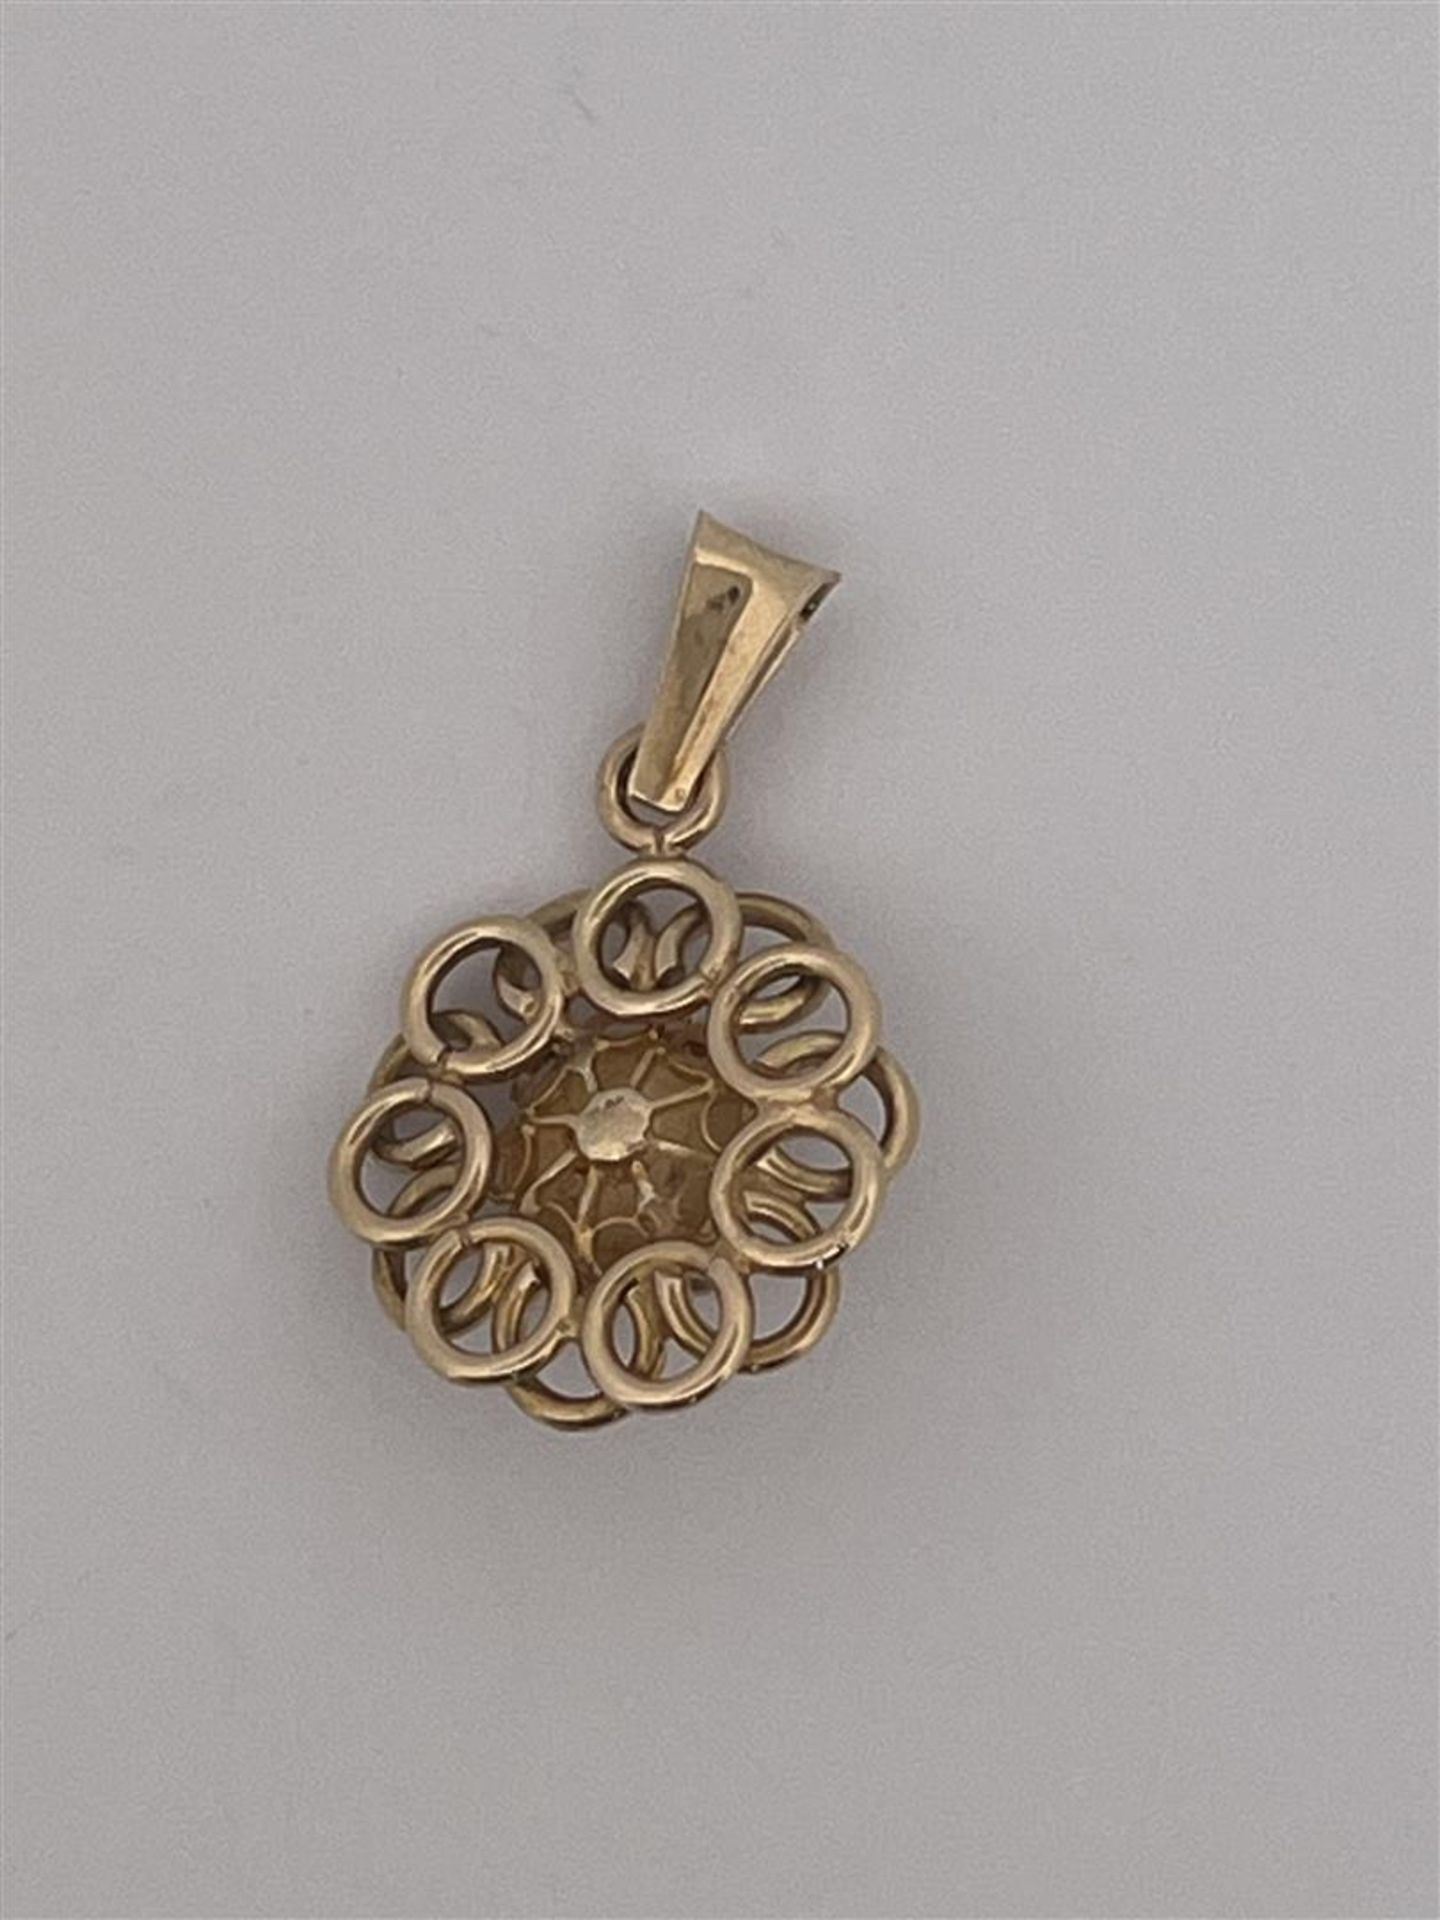 14kt yellow gold Zeeland button pendant.
Weight: 2.8 grams.
Dimensions: 27.5mm x 17.2mm. - Bild 2 aus 2